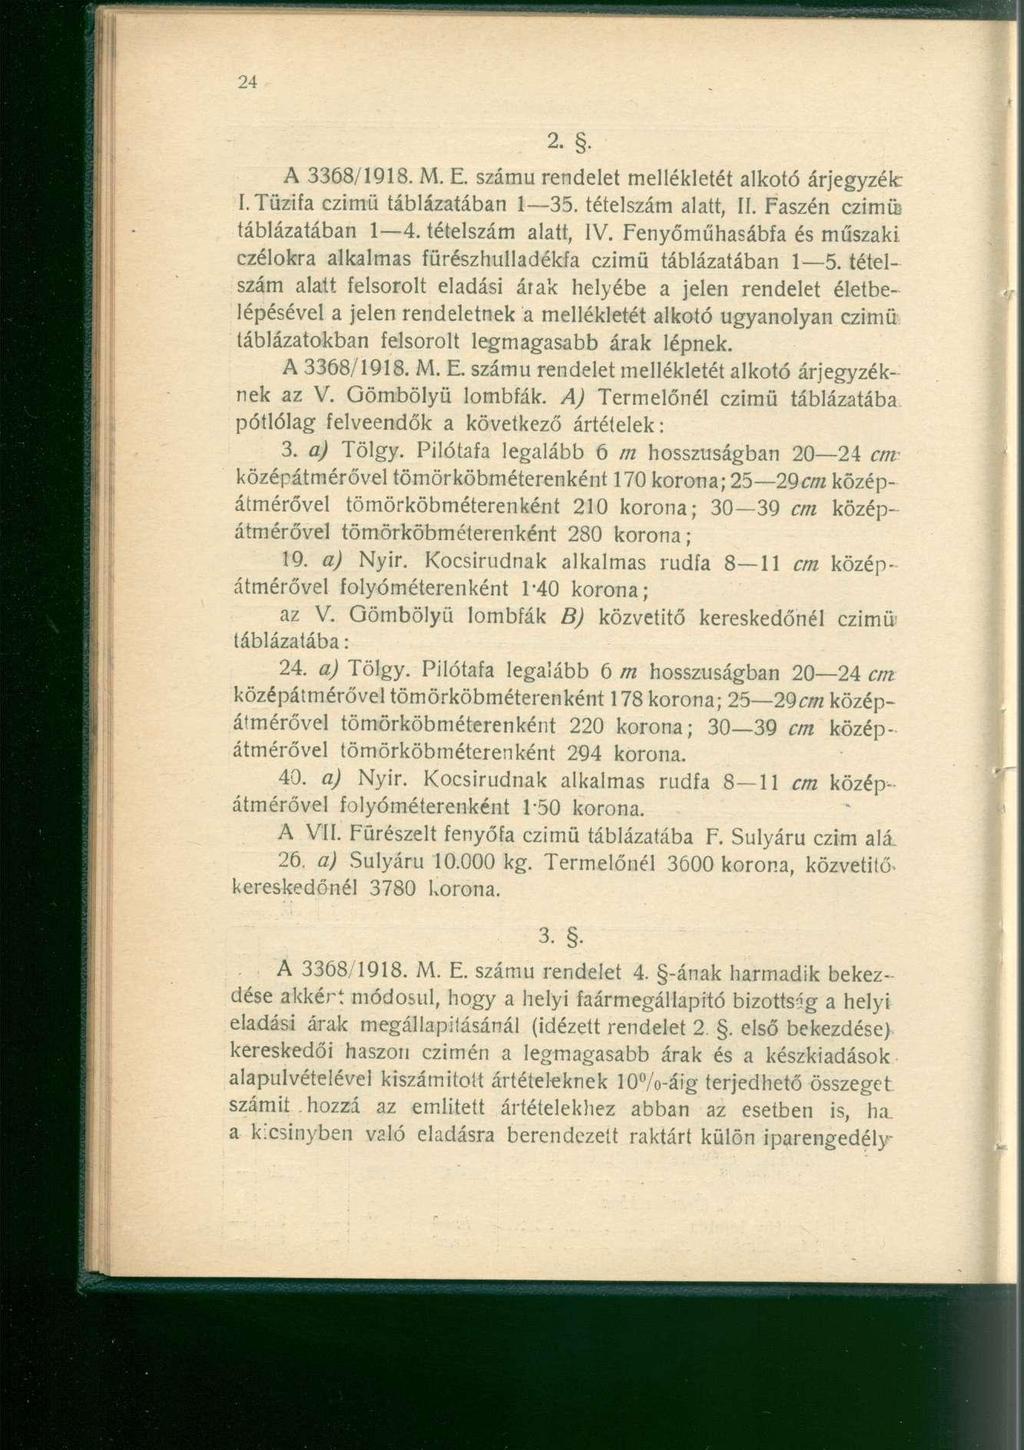 A 3368/1918. M. E. számú rendelet mellékletét alkotó árjegyzék: I. Tűzifa czimü táblázatában 1 35. tételszám alatt, II. Faszén czimüj táblázatában 1 4. tételszám alatt, IV.